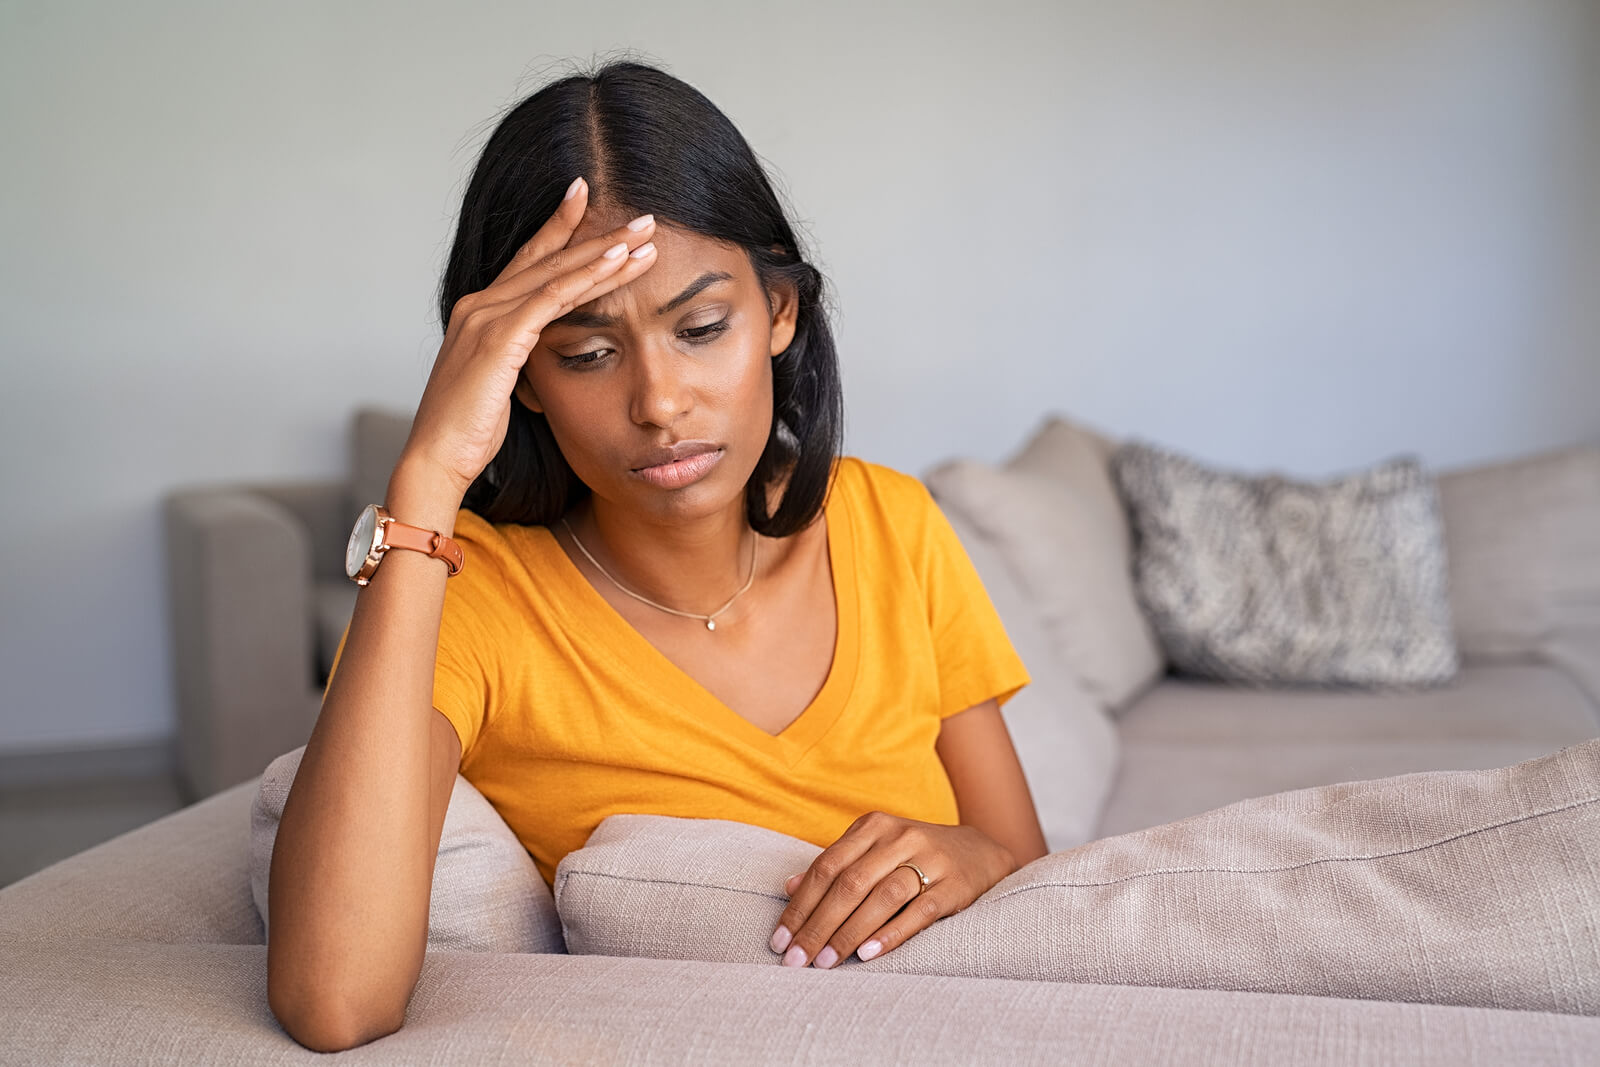 La céphalée de tension est un type de mal de tête qui survient après l'accouchement